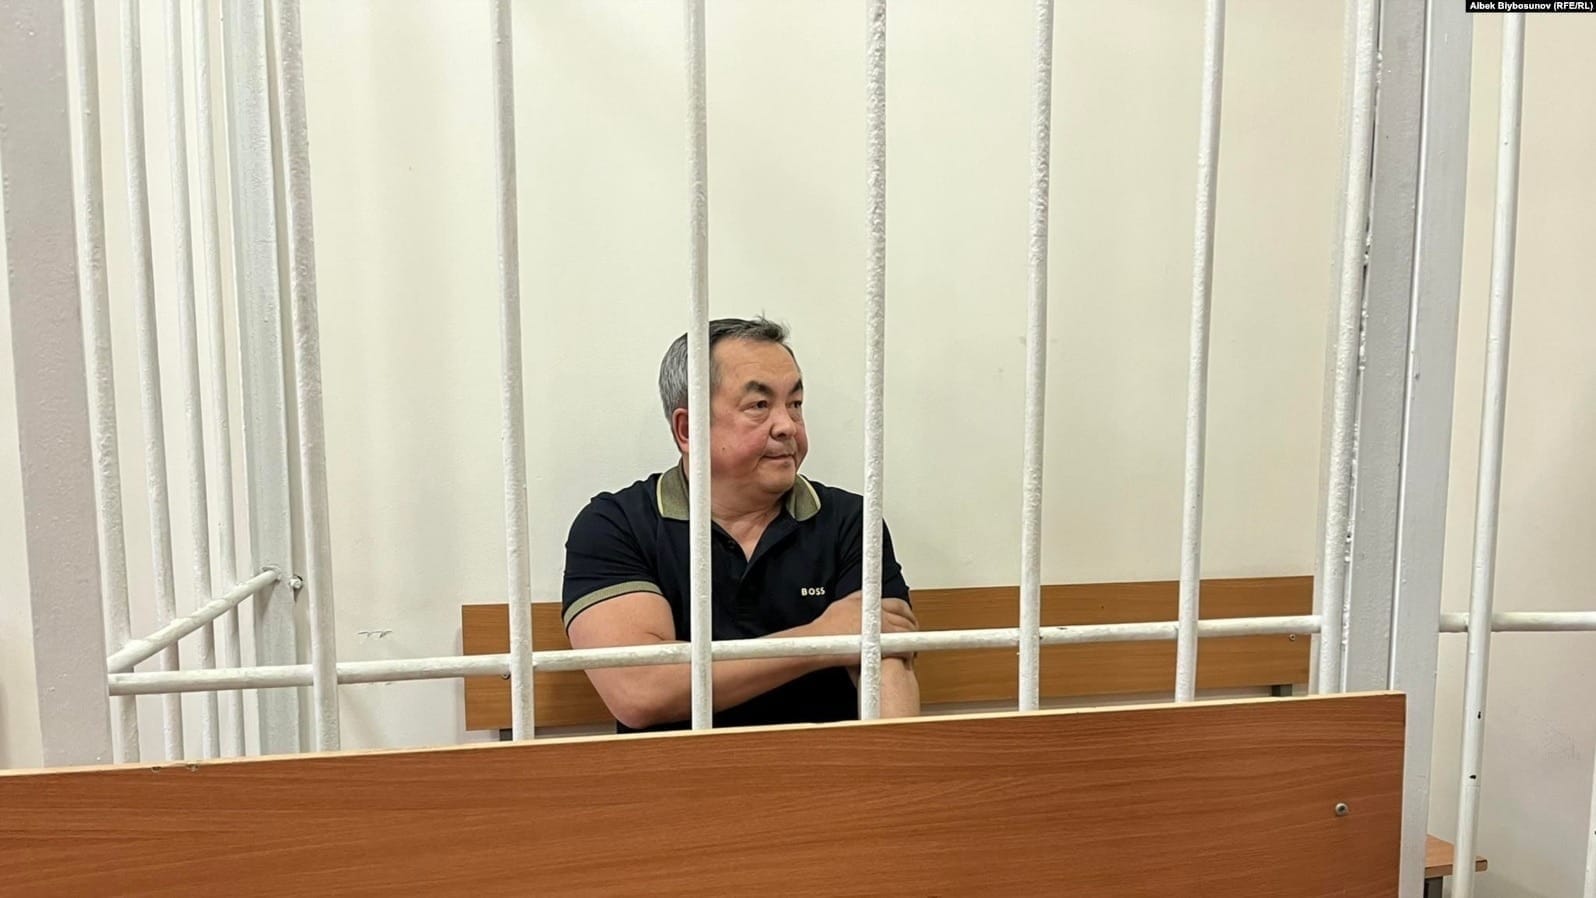 Болтурук отделался штрафом - Первомайский суд Бишкека вынес приговор экс- и.о. руководителя "Кумтора"